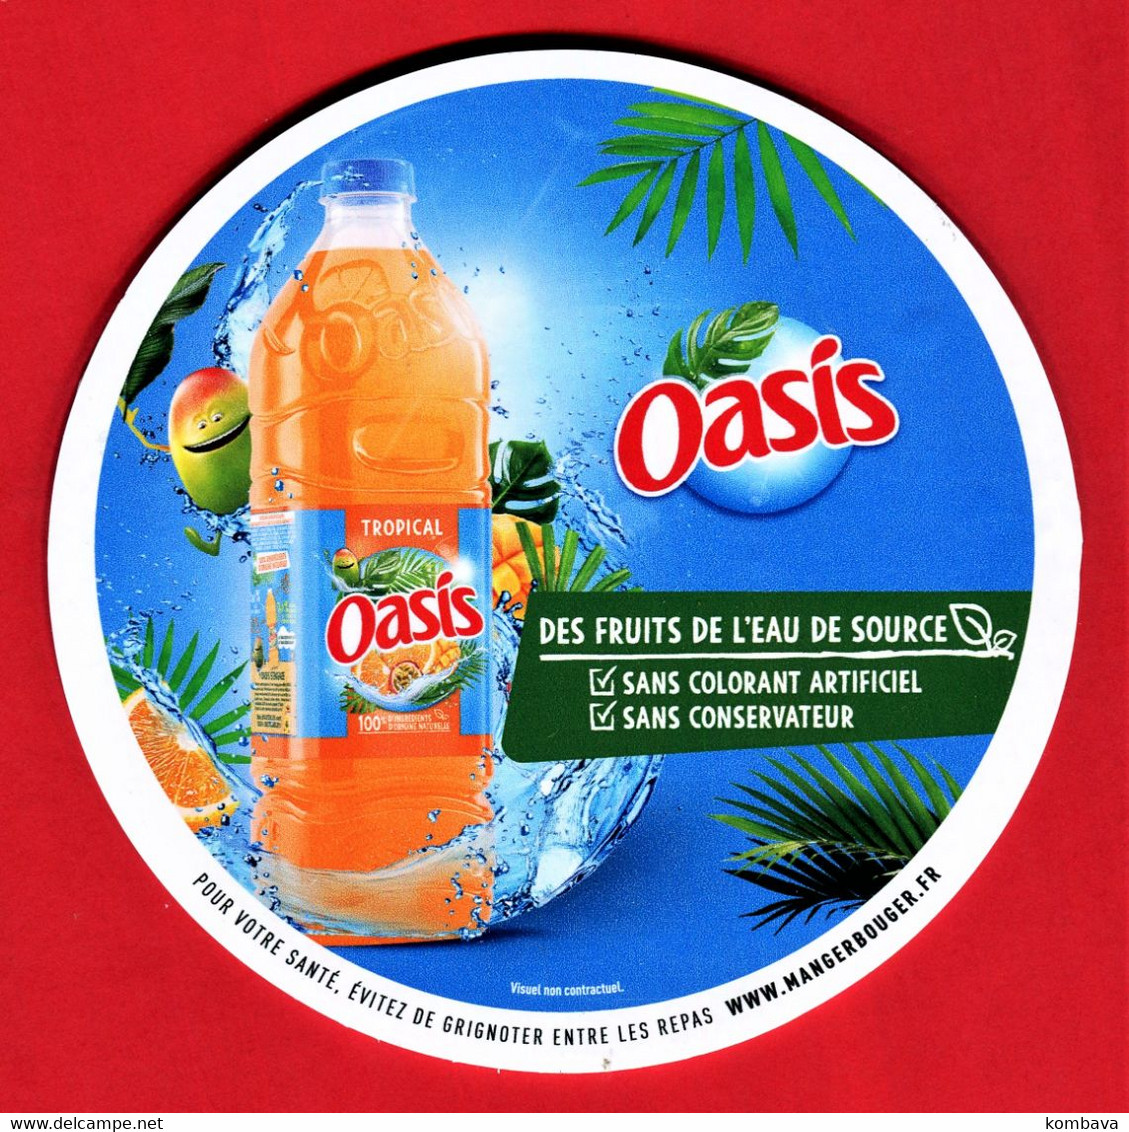 RARE - LA REUNION - Balise De Gondole - Publicité De Boisson / OASIS (Réunion) Eau Fruitée (obj Div Balise Oasis) - Affiches